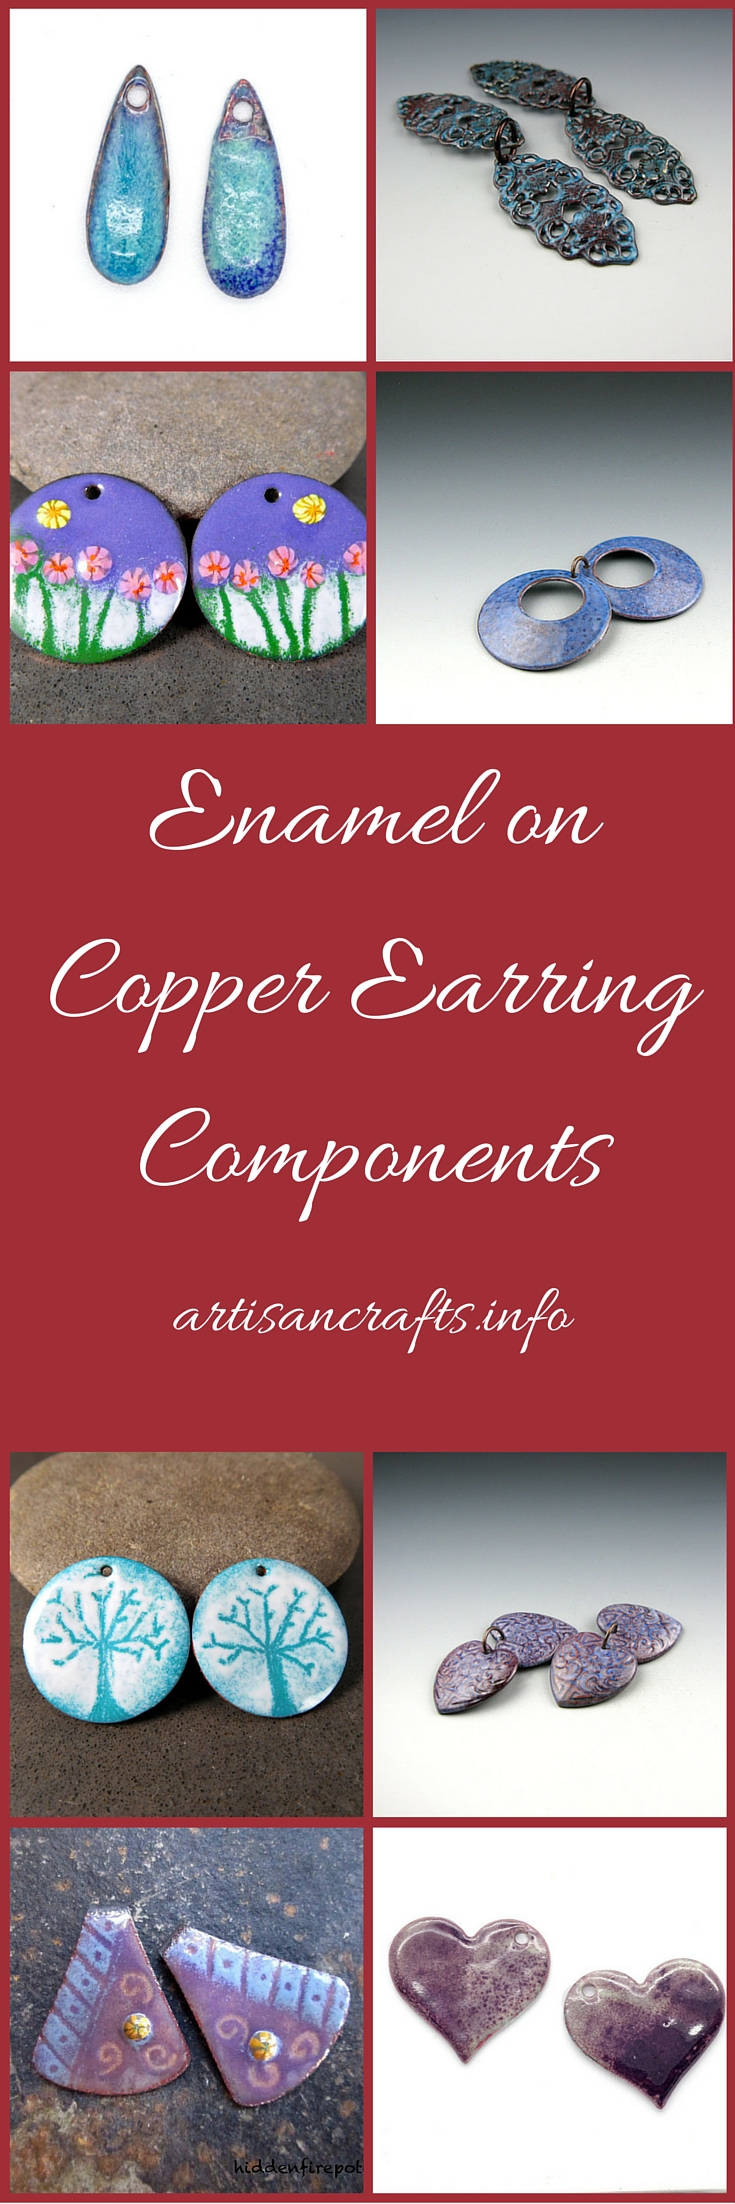 Enamel on Copper Earring Components